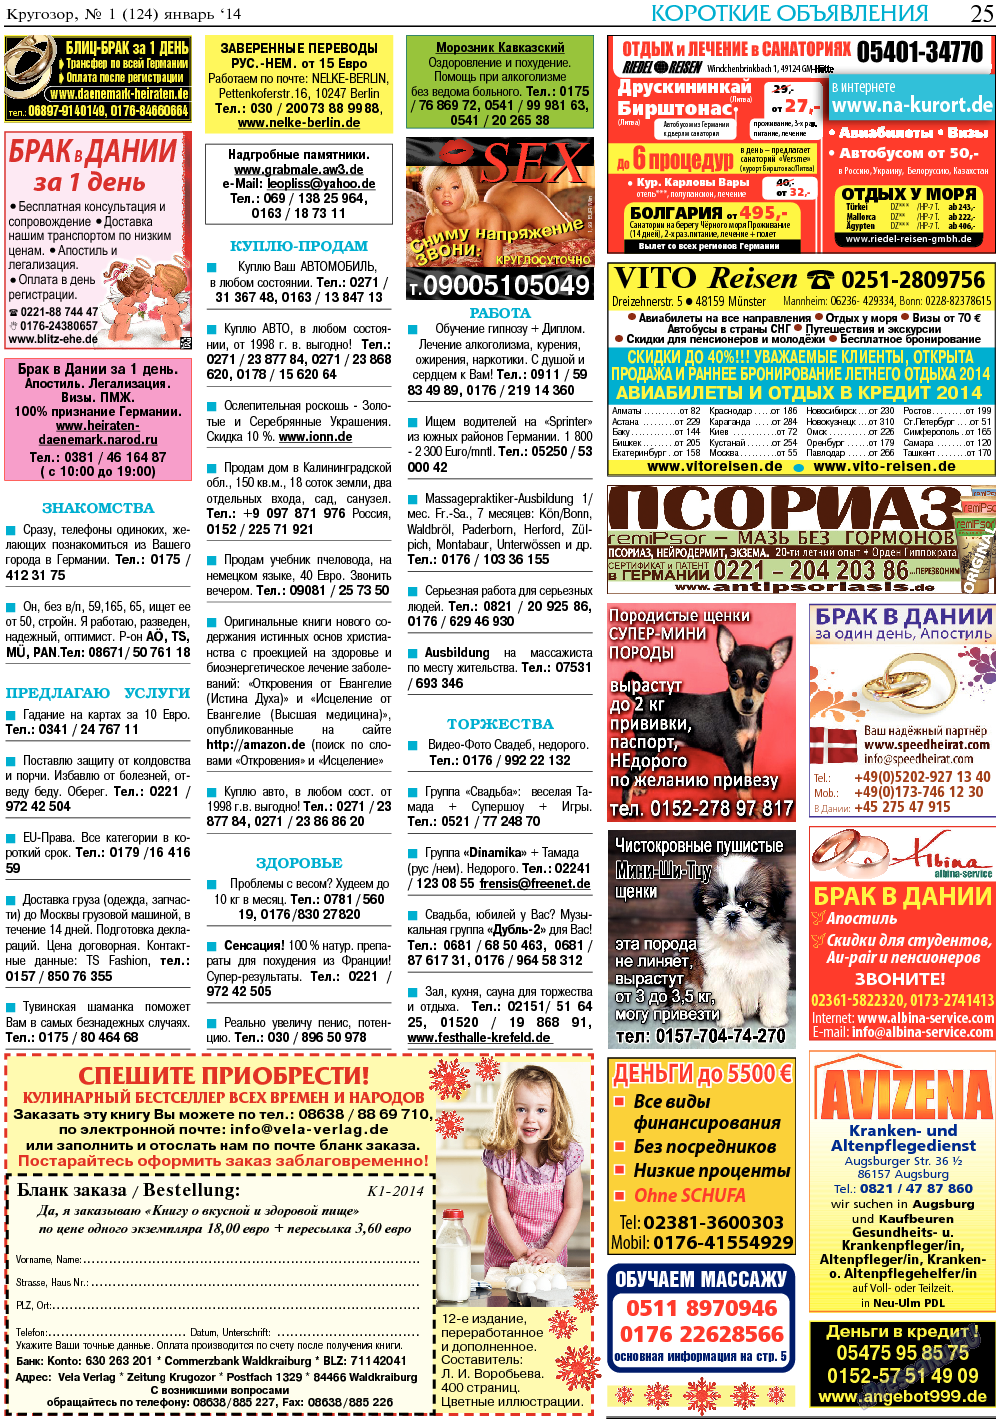 Кругозор, газета. 2014 №1 стр.25